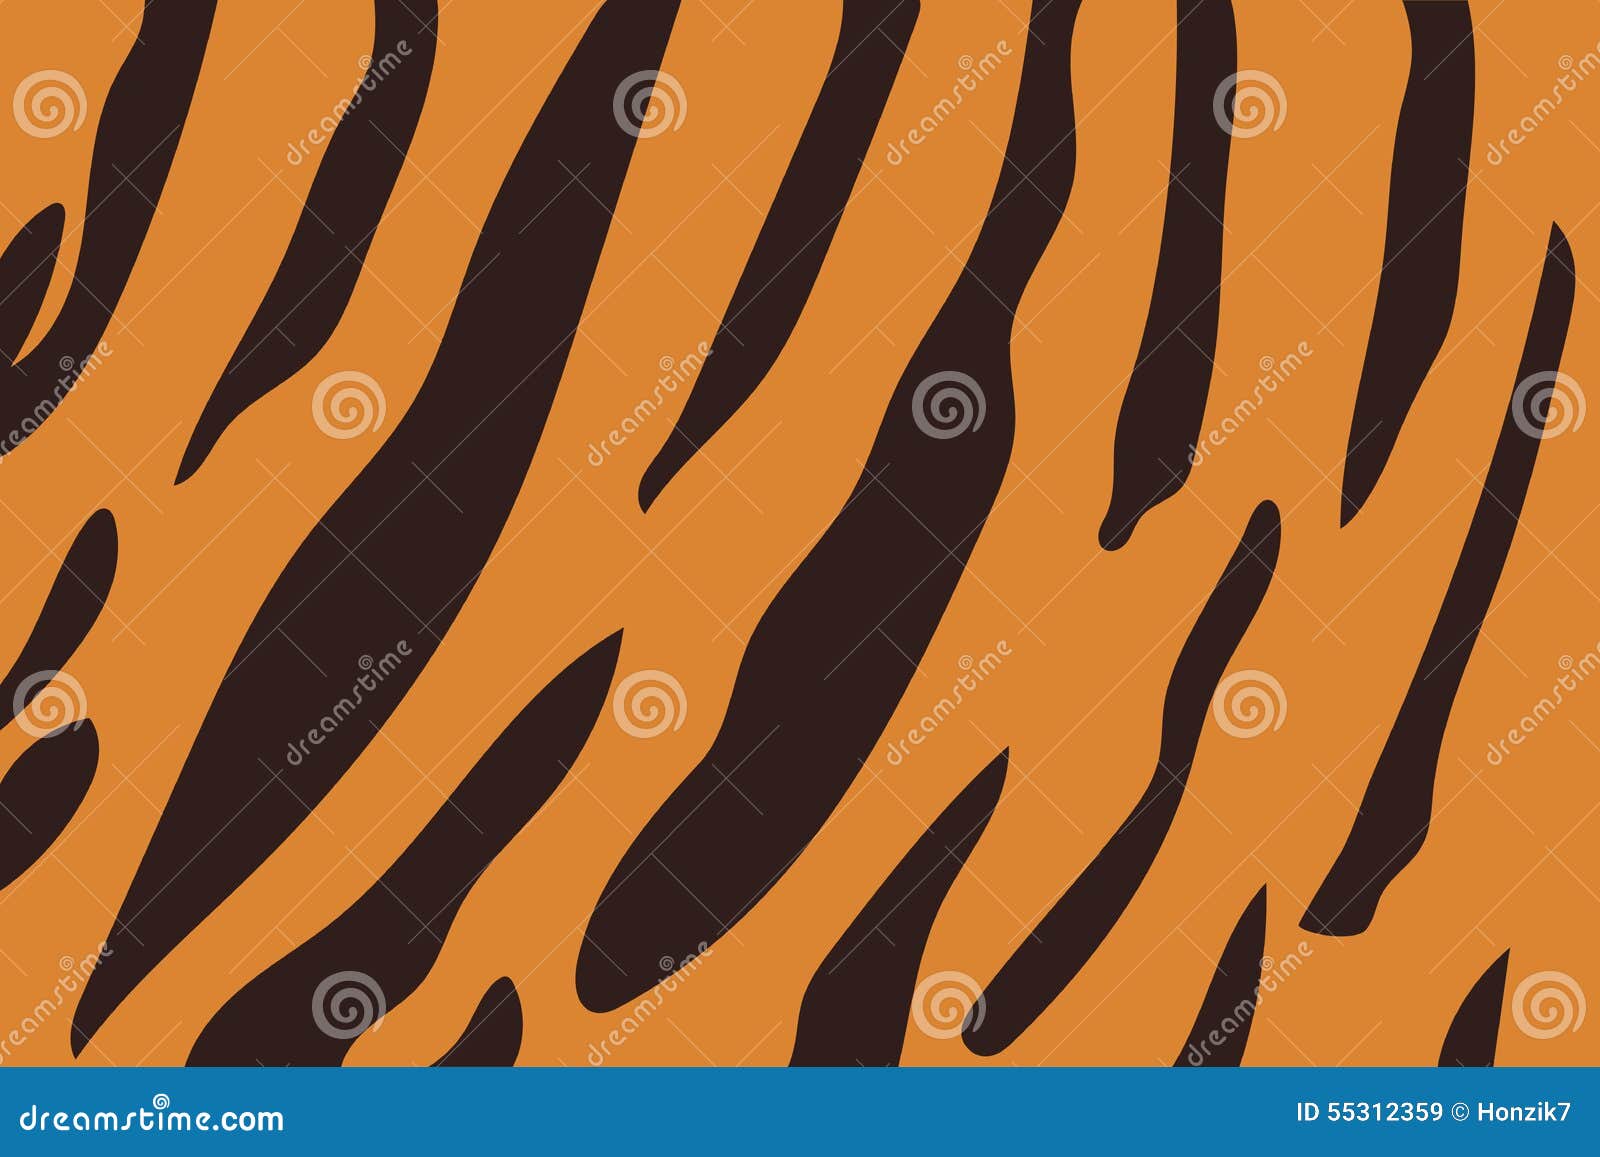 Рисуем полосы тигра на колготках